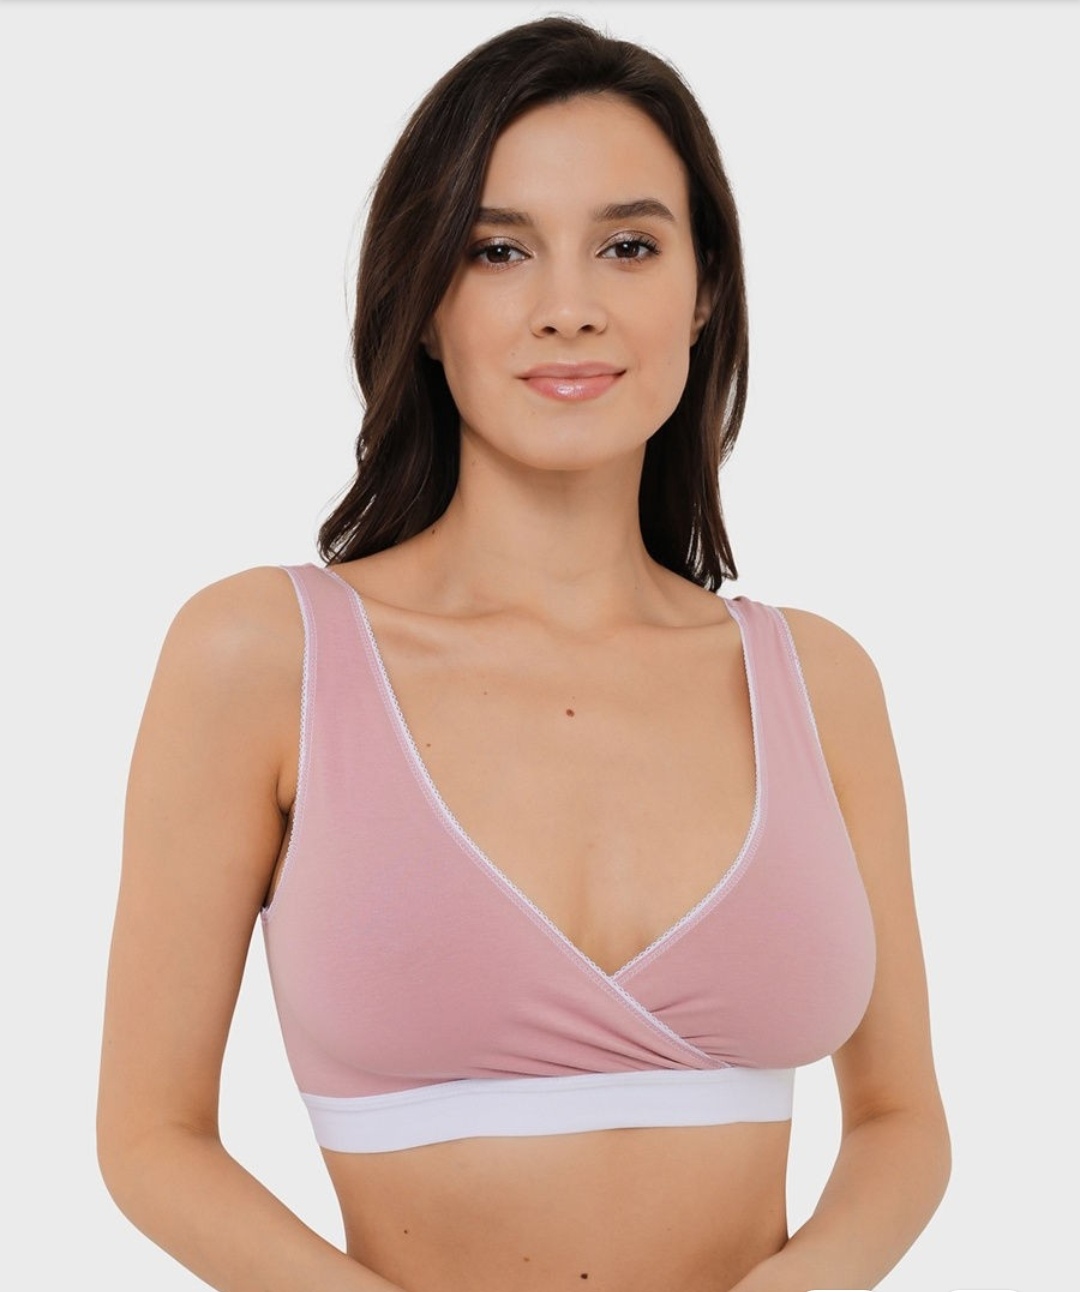 Бюстгальтер для кормления Medela Ultimate BodyFit bra - «Красивая бесшовная  модель, которая скрасит ГВ! Рекомендую!»